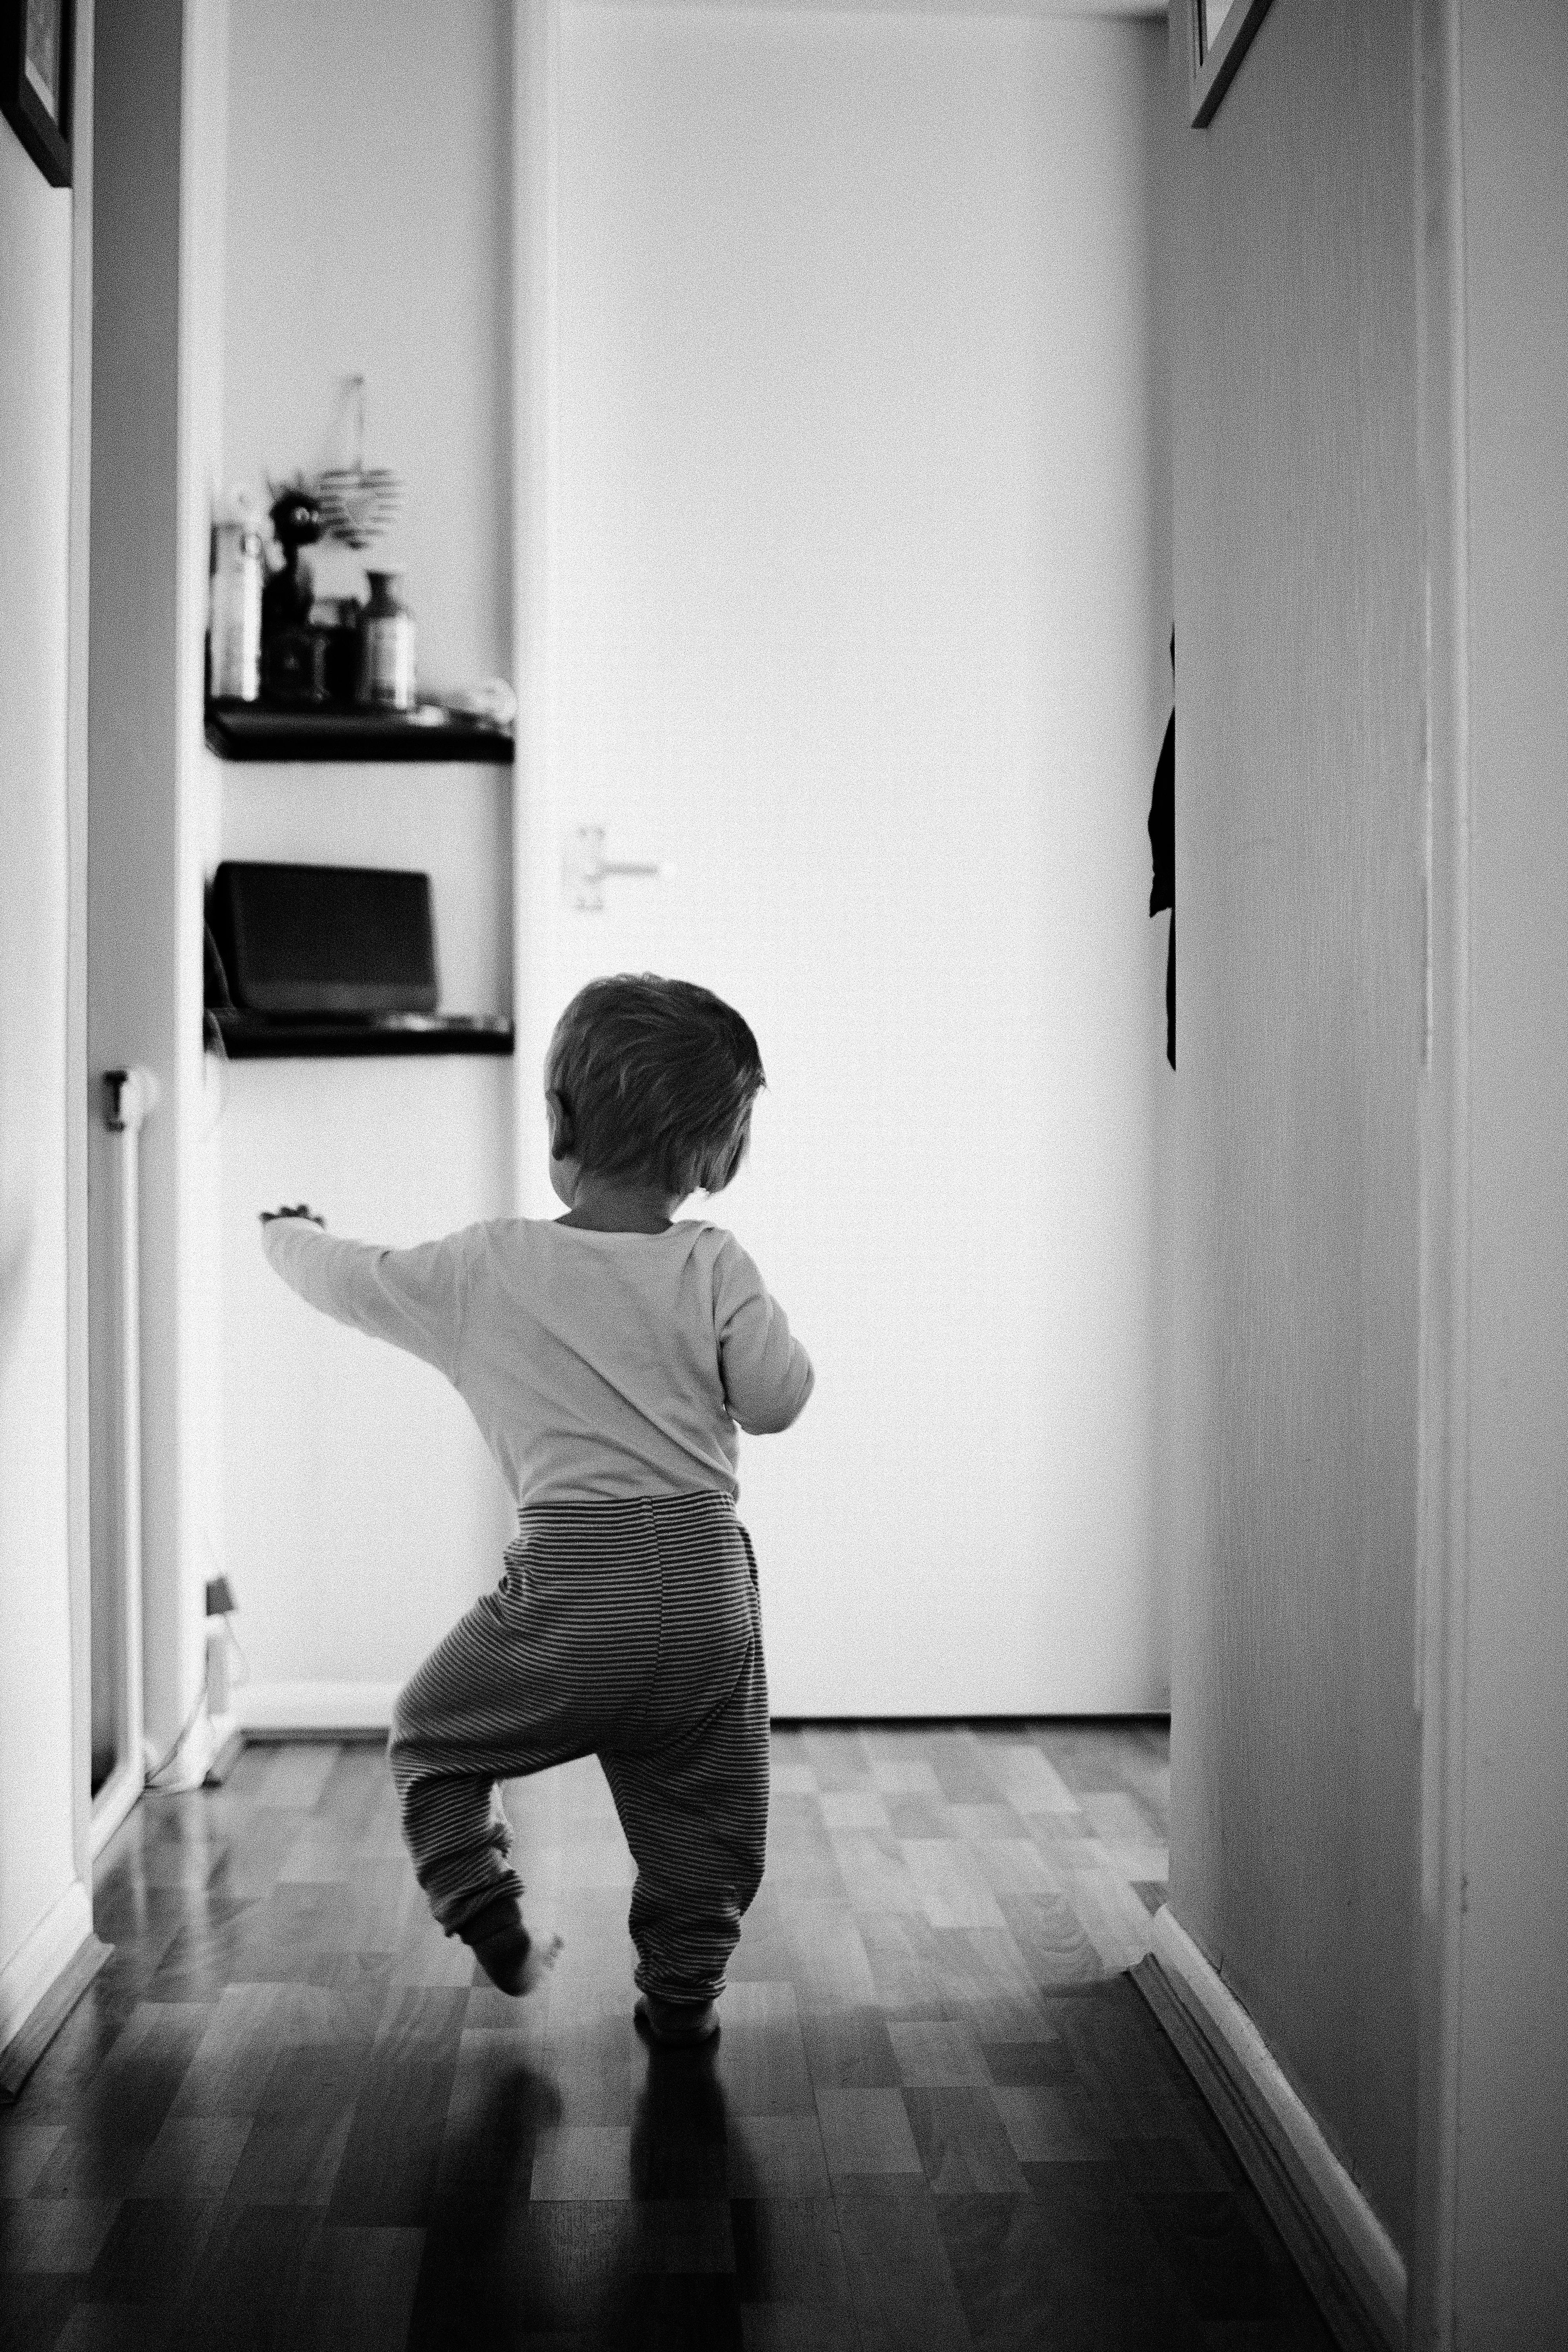 child walking away